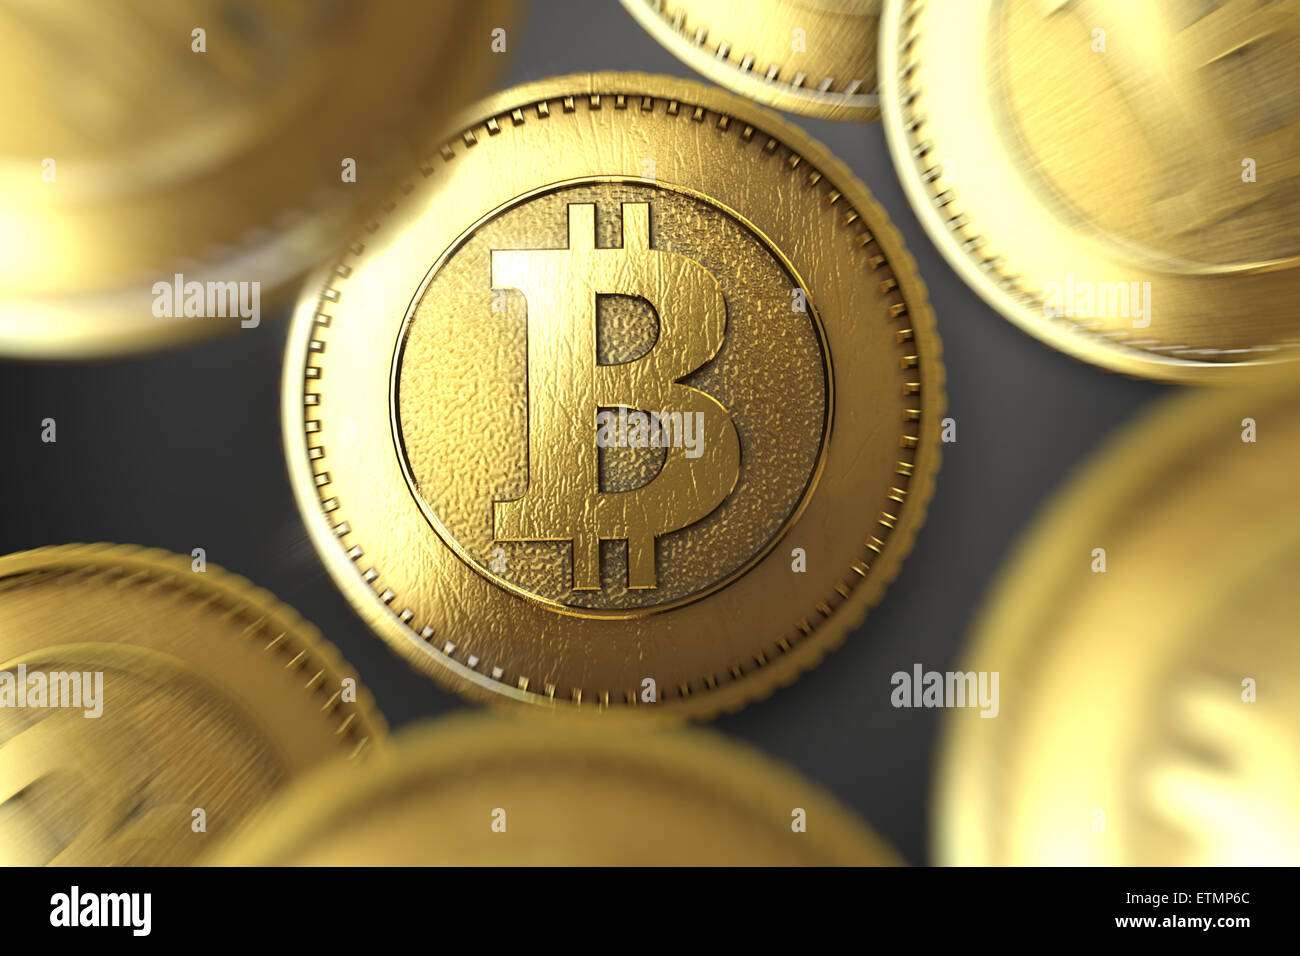 Une représentation stylisée d'un Bitcoin, la monnaie numérique. Banque D'Images